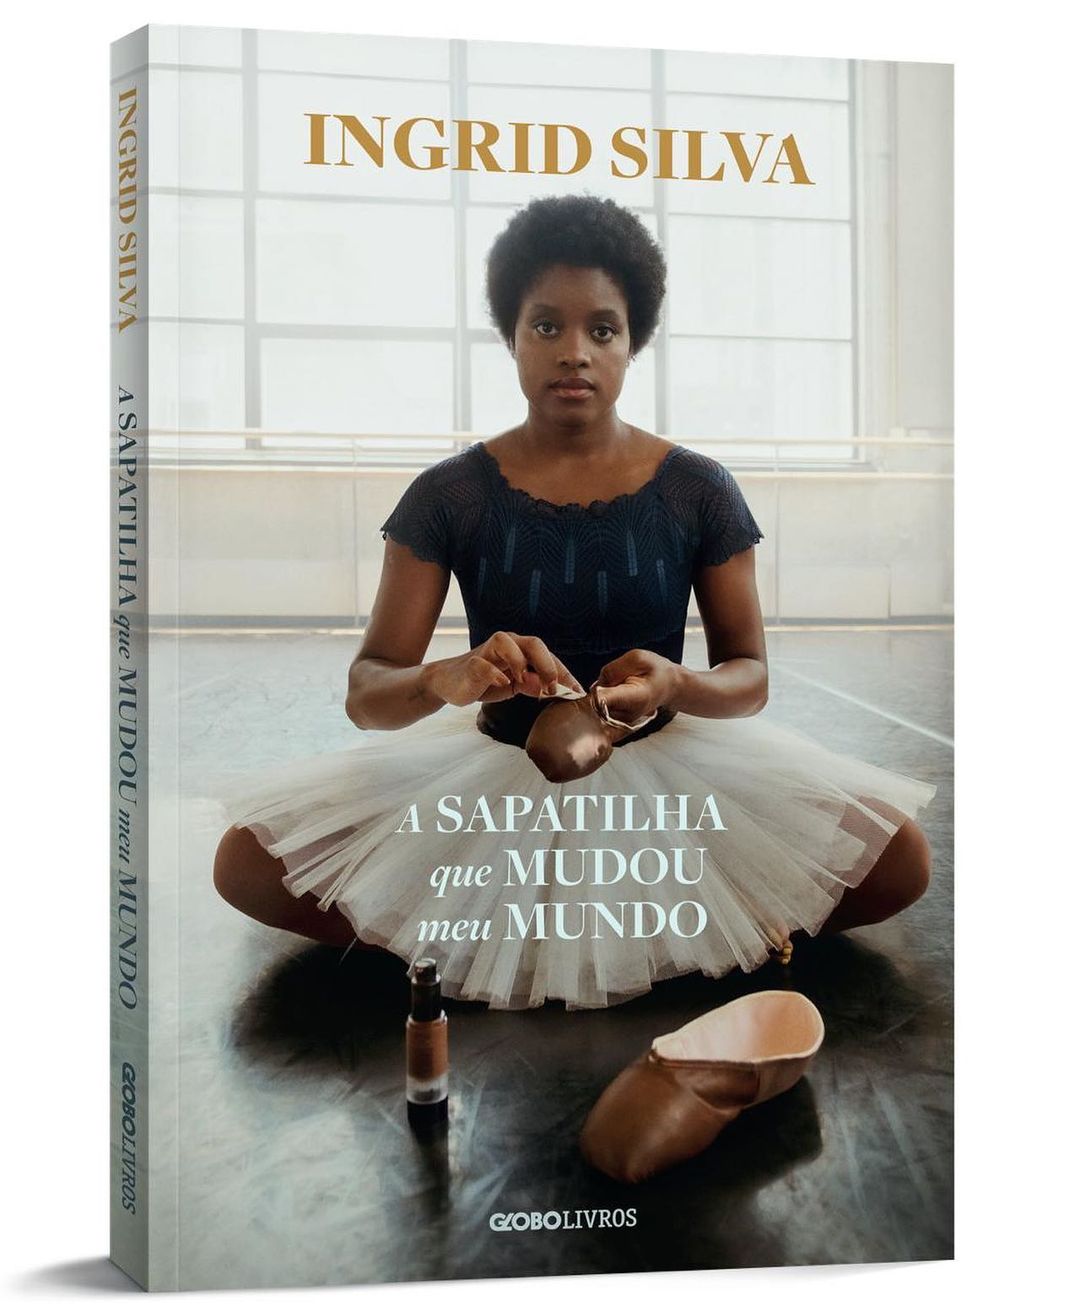 Imagem da capa do livro "A sapatilha que mudou meu mundo", de Ingrid Silva, bailarina brasileira. 